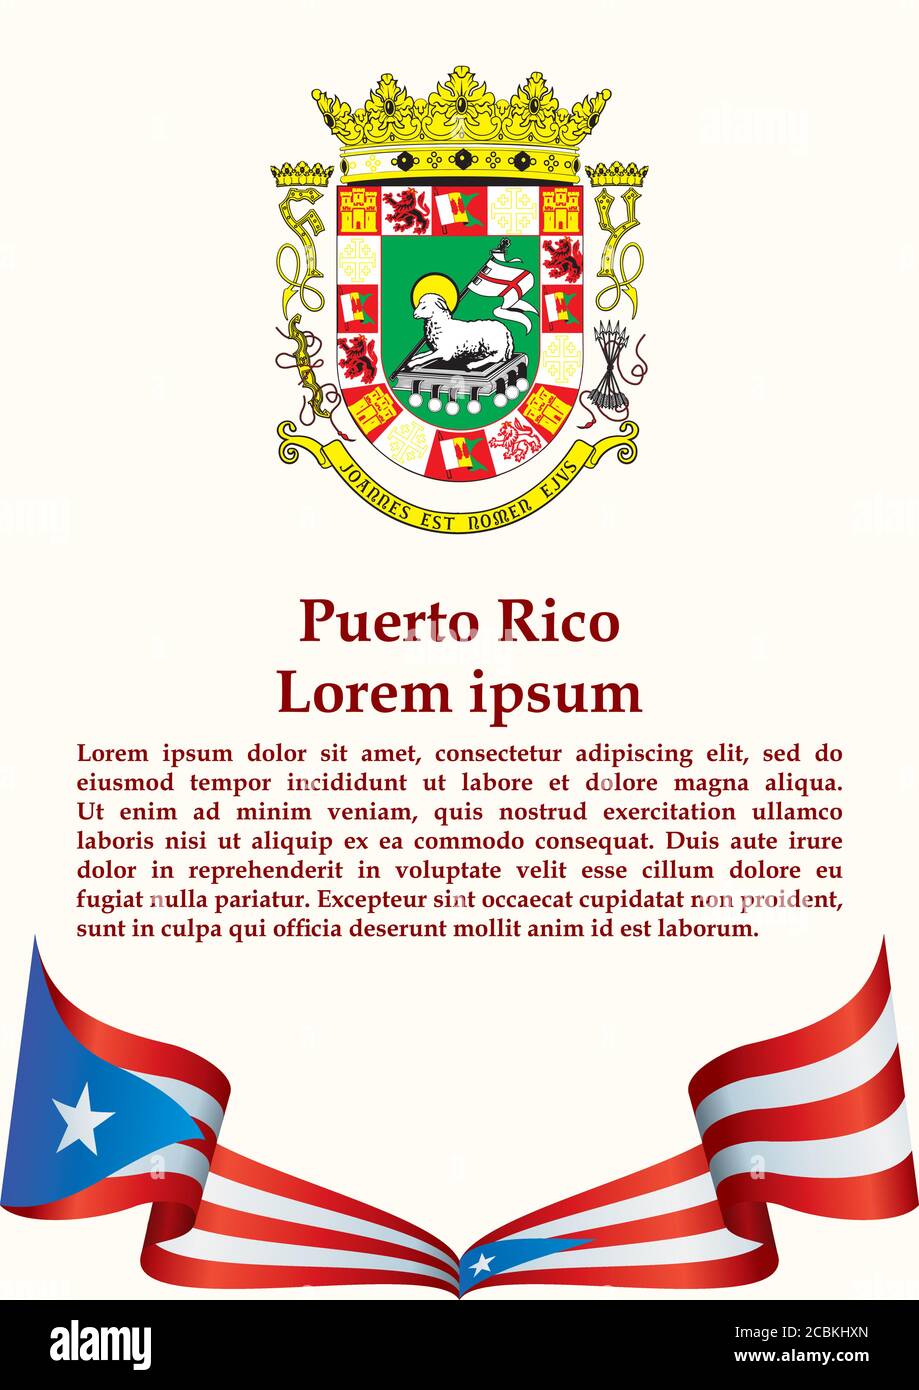 Drapeau de Porto Rico, Commonwealth de Porto Rico. Modèle pour la conception de prix, un document officiel avec le drapeau de Porto Rico. Vecto lumineux et coloré Illustration de Vecteur